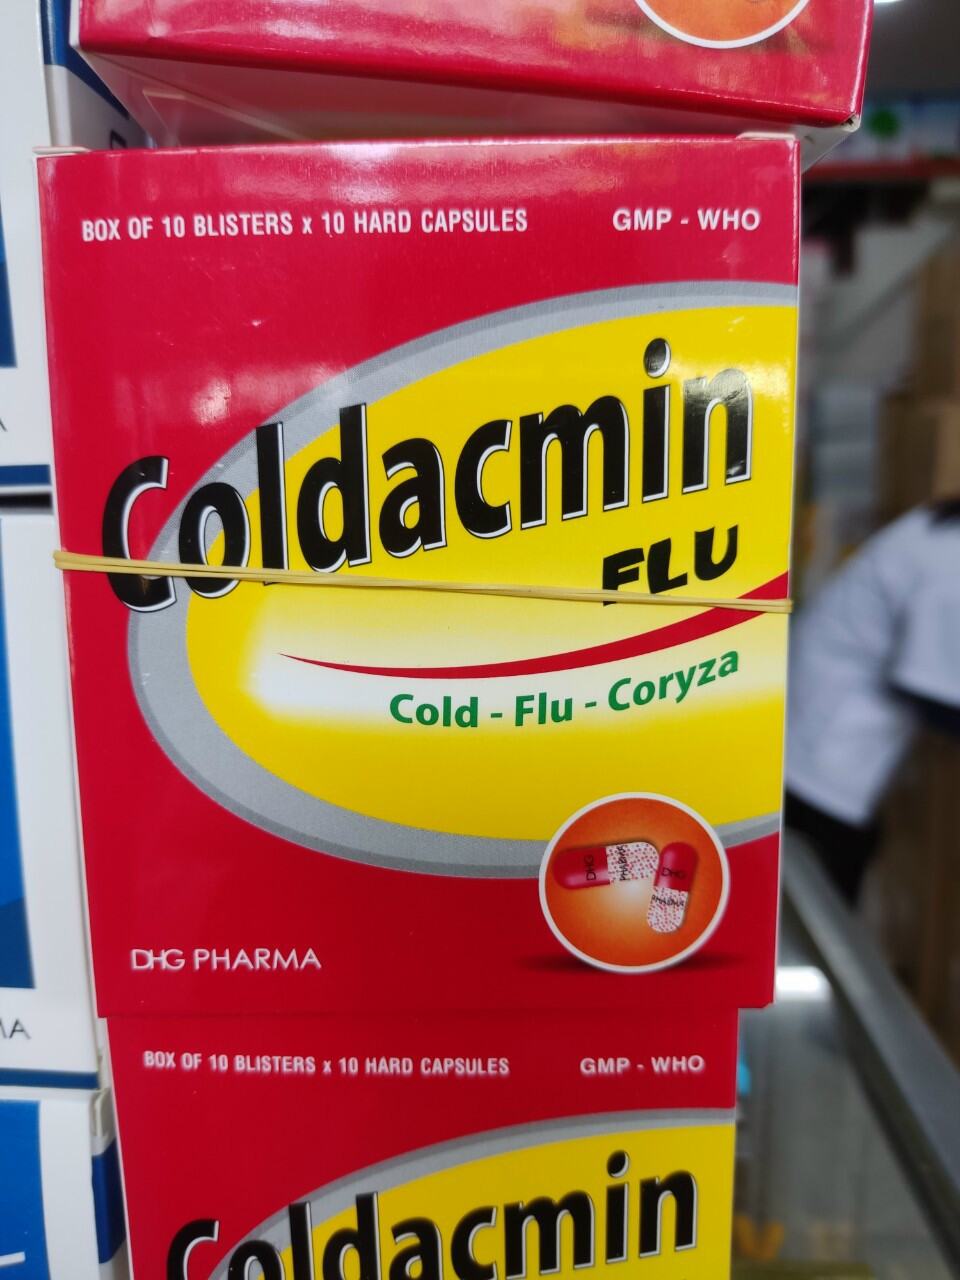 coldacmin flu